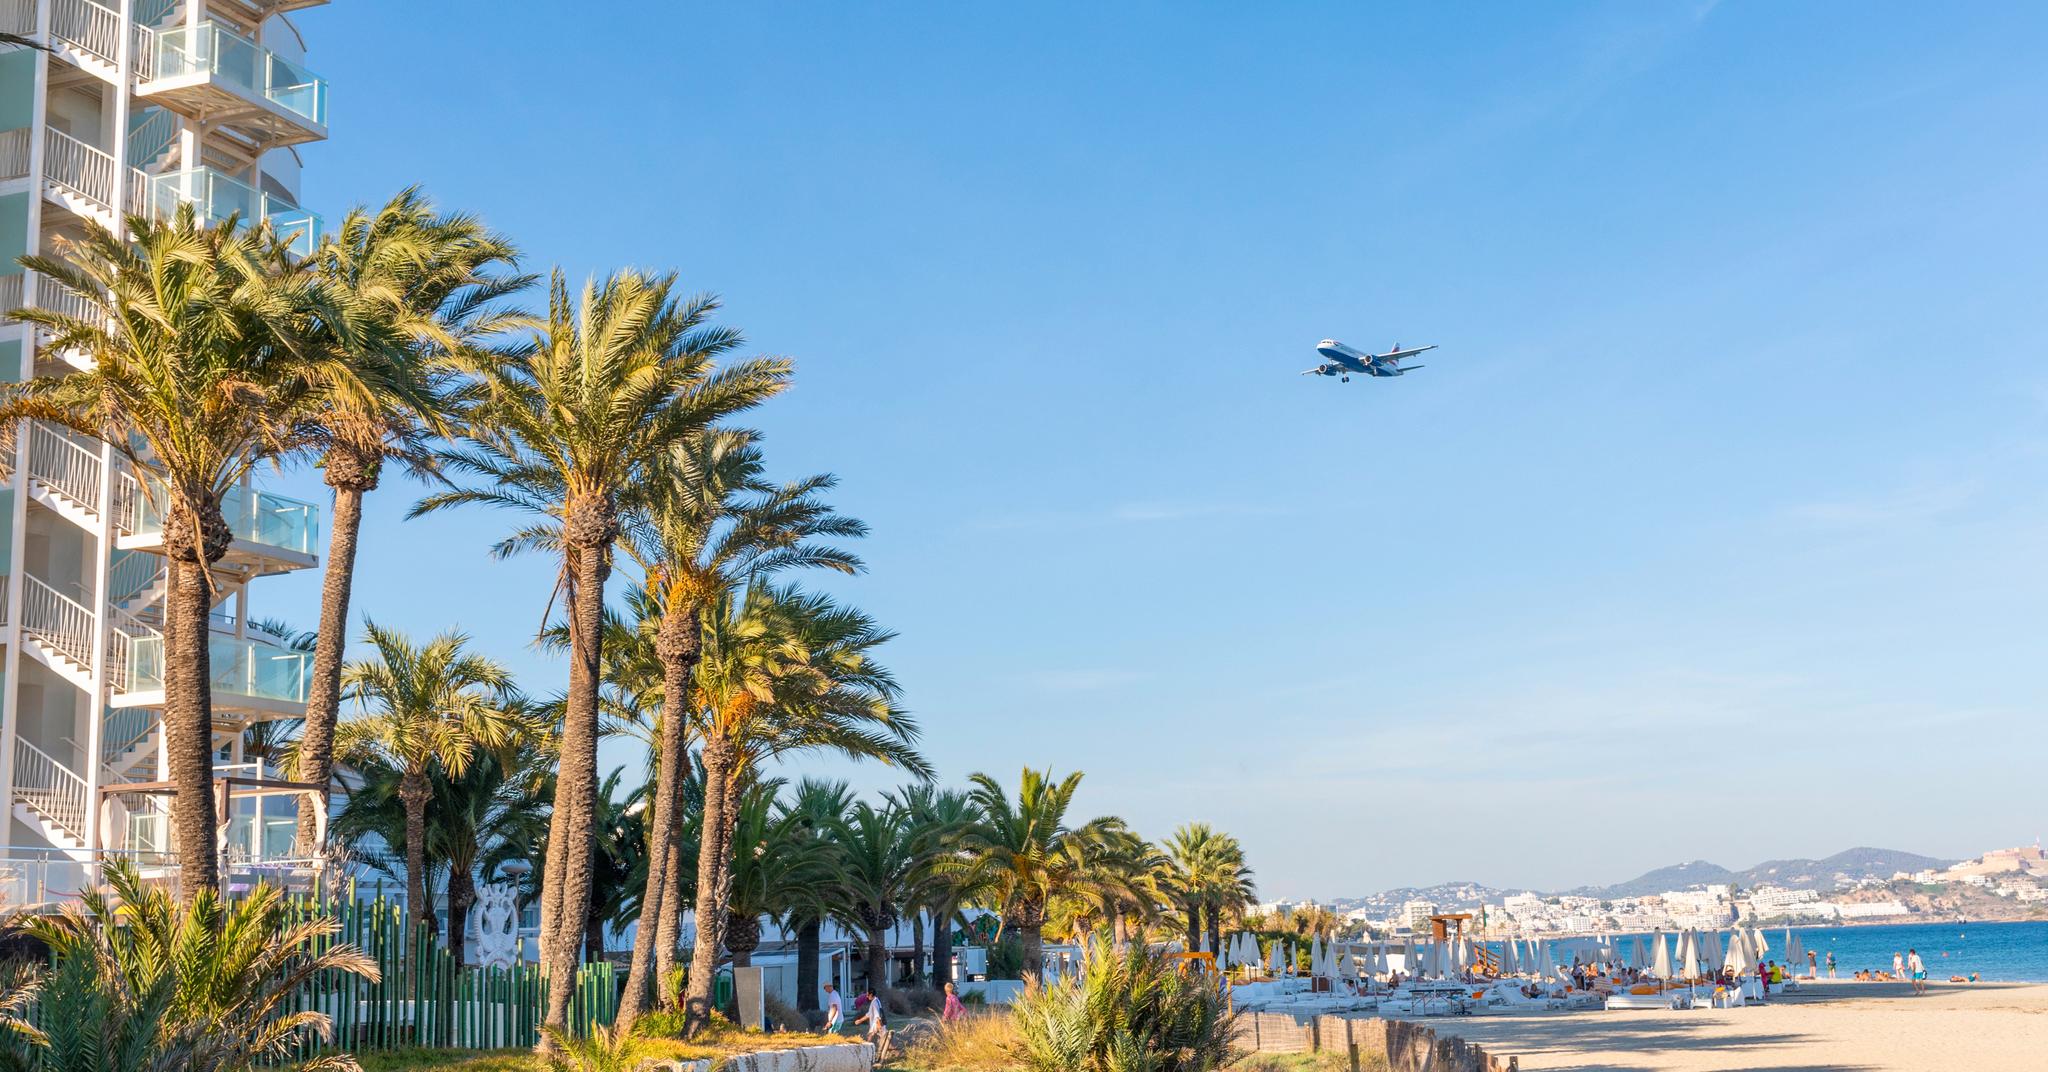 Turister på vei. Utenfor sesong og korona-redusert, men flyene landet likevel hyppig på Ibiza.